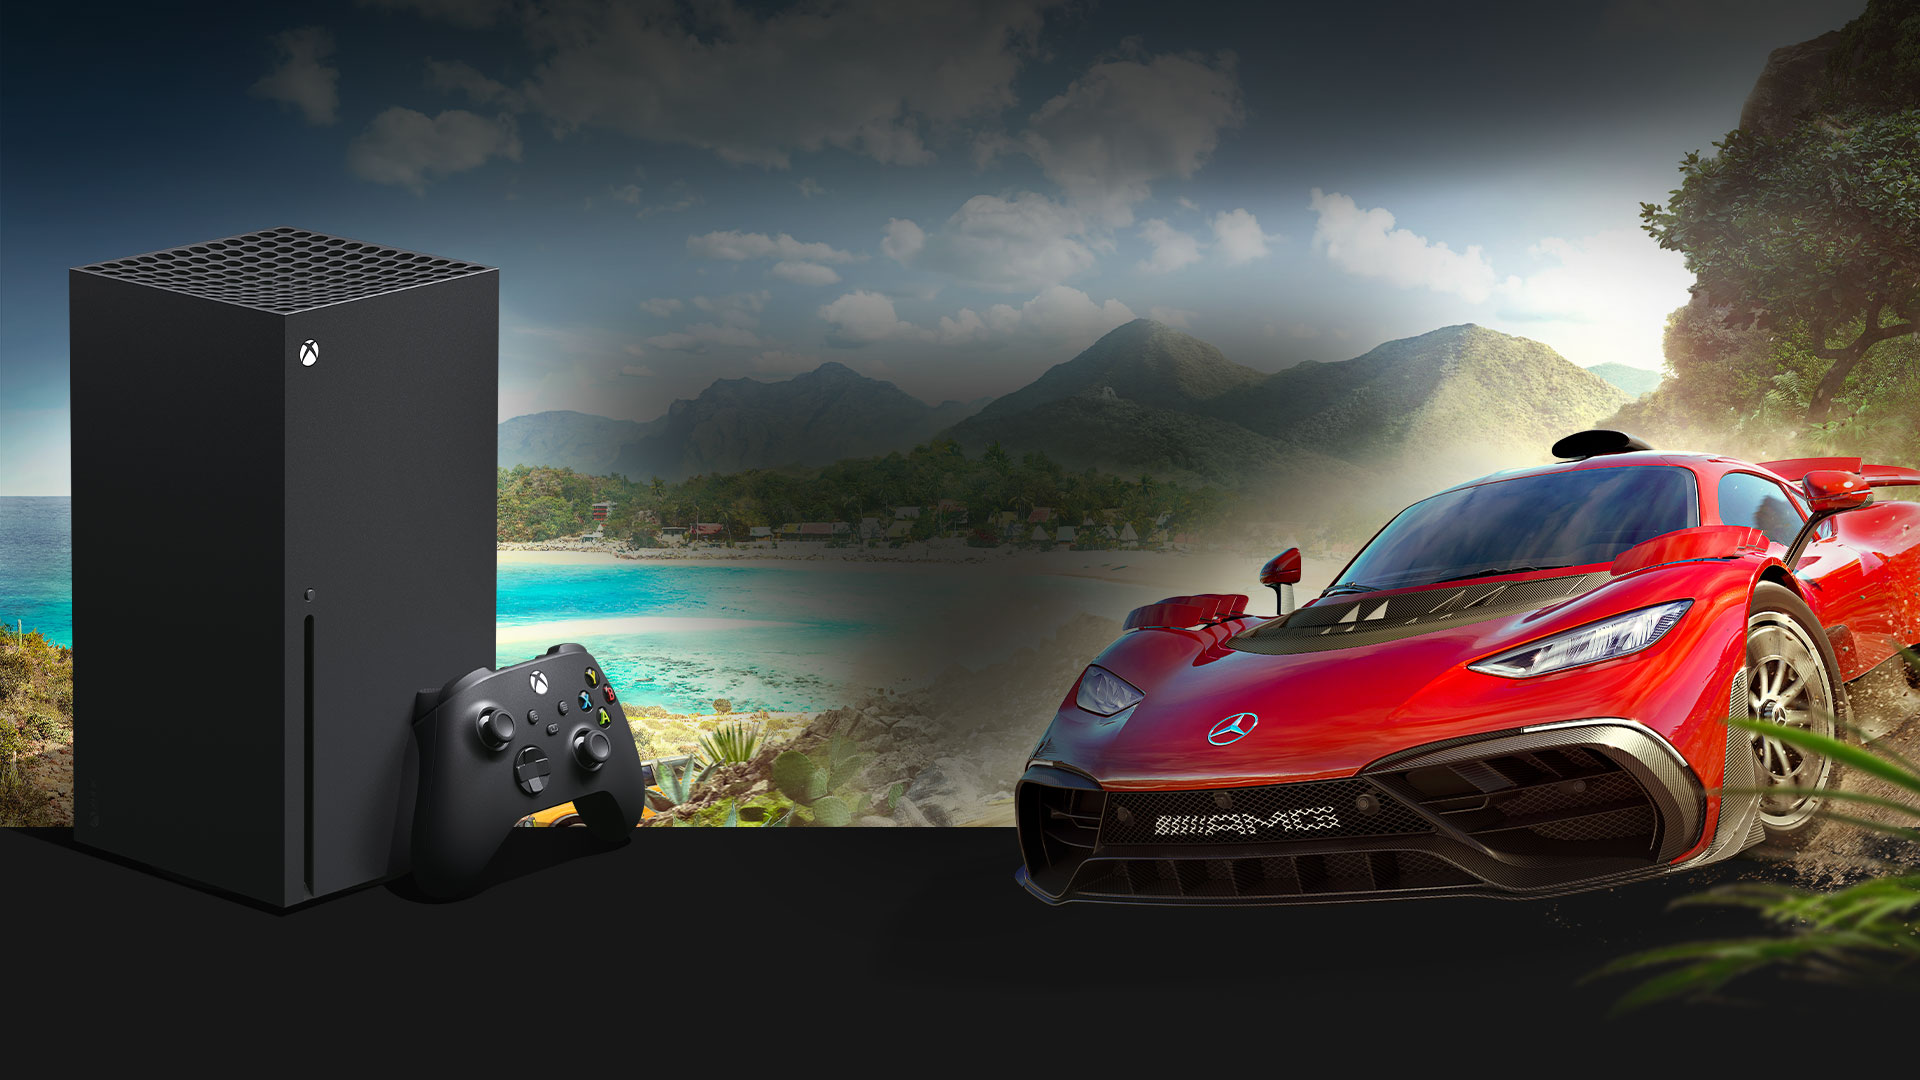 Una console Xbox Series X e una Mercedes-AMG One davanti al festival Horizon in Messico.